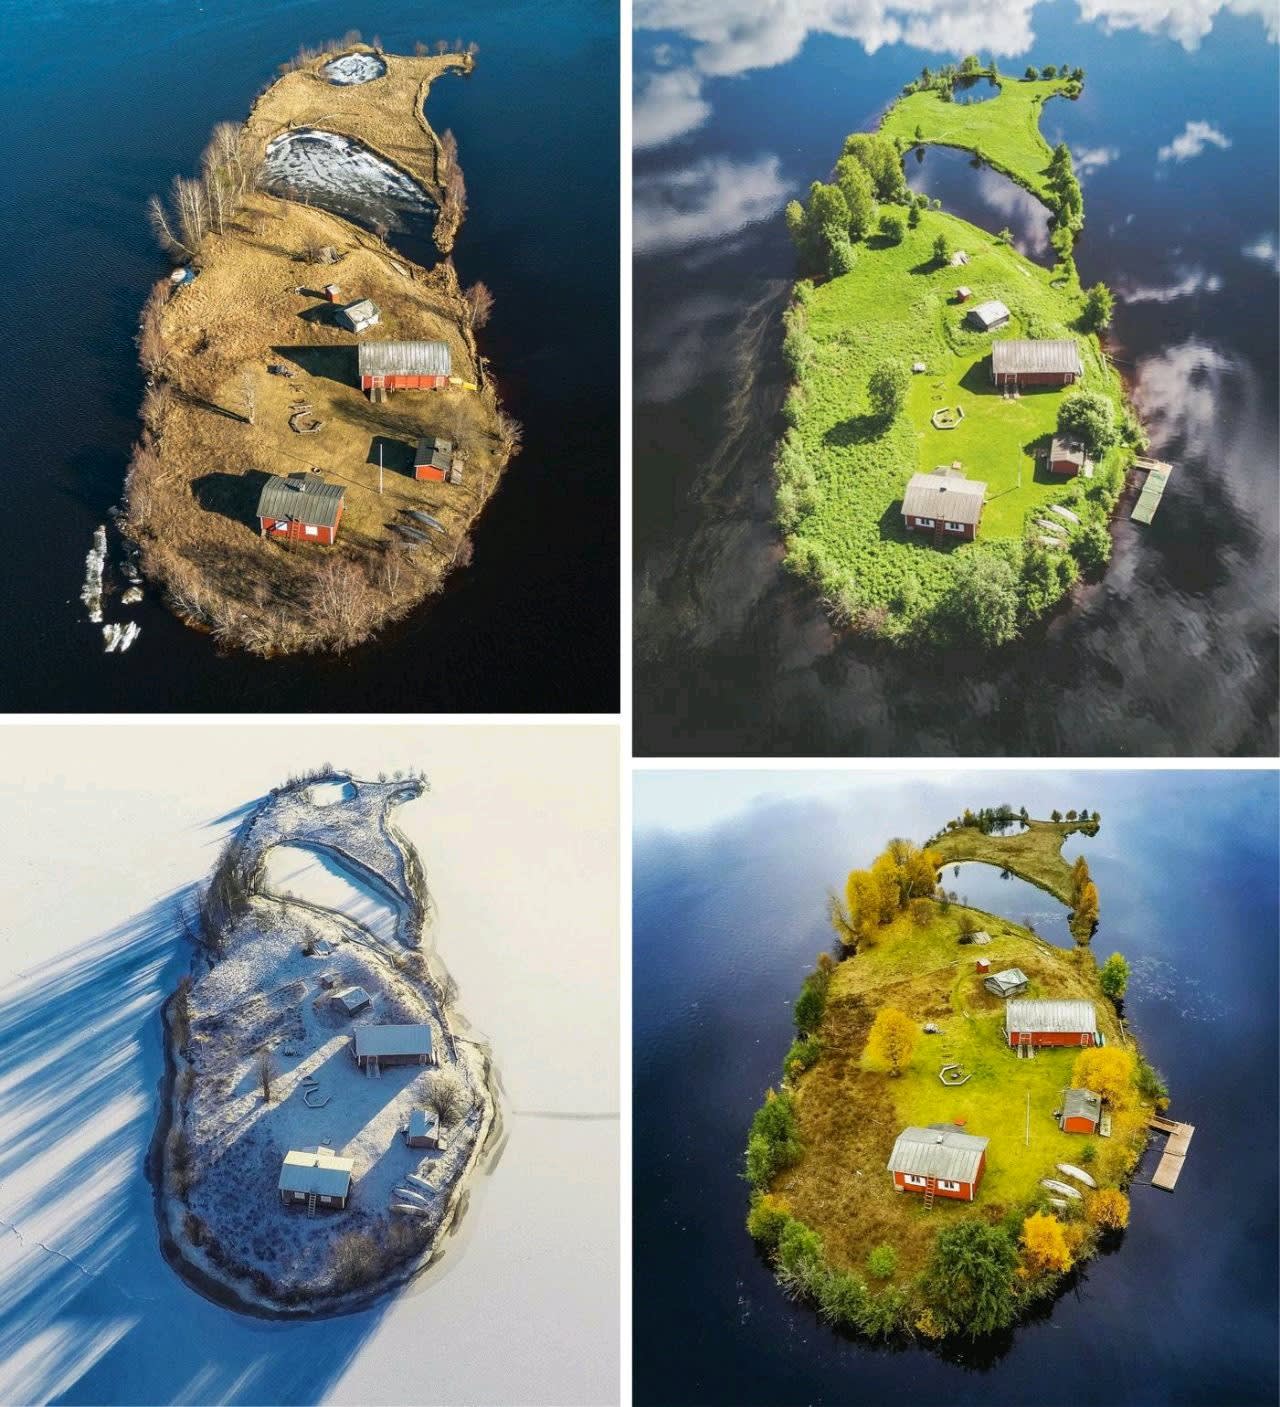 Four seasons on a Finnish island.